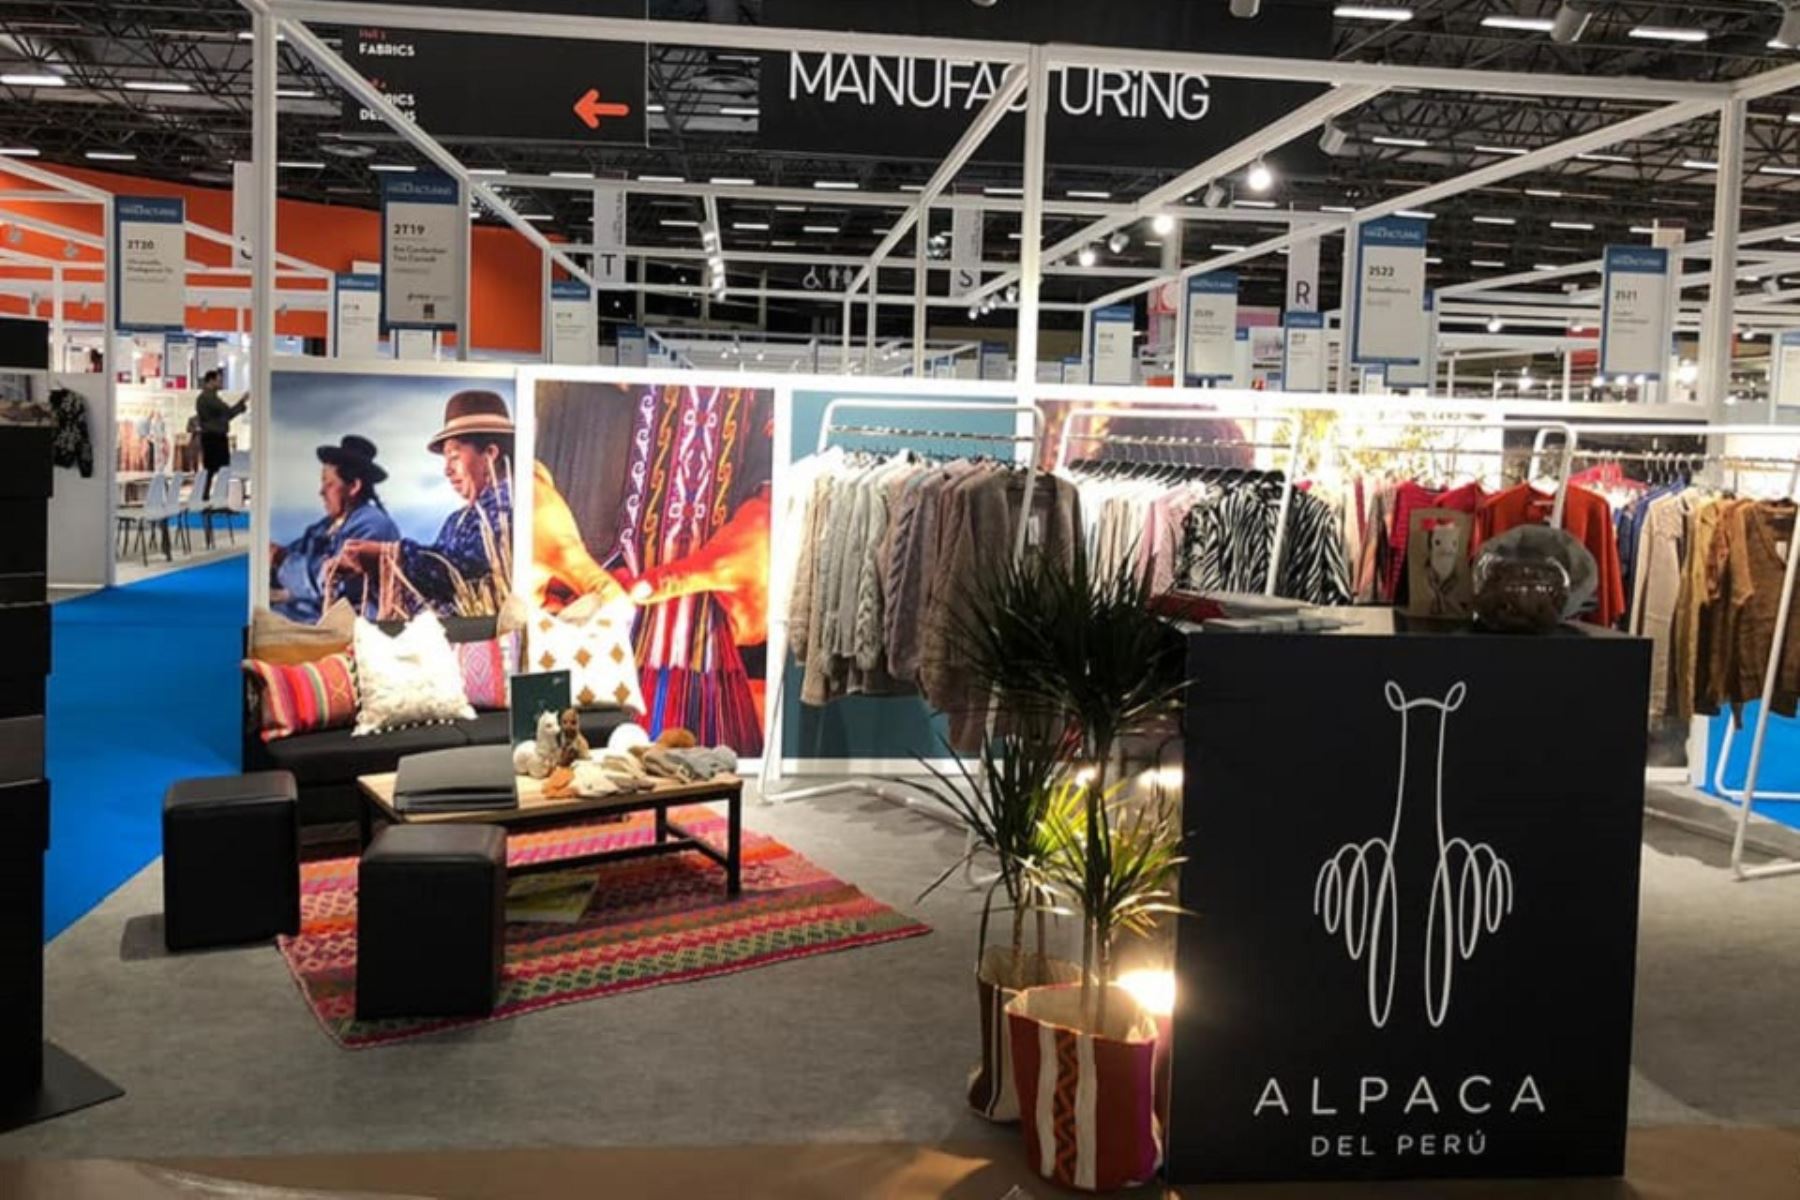 La feria textil Première Vision en París, Francia, exhibió la oferta textil de alpaca del Perú. Foto: Internet.